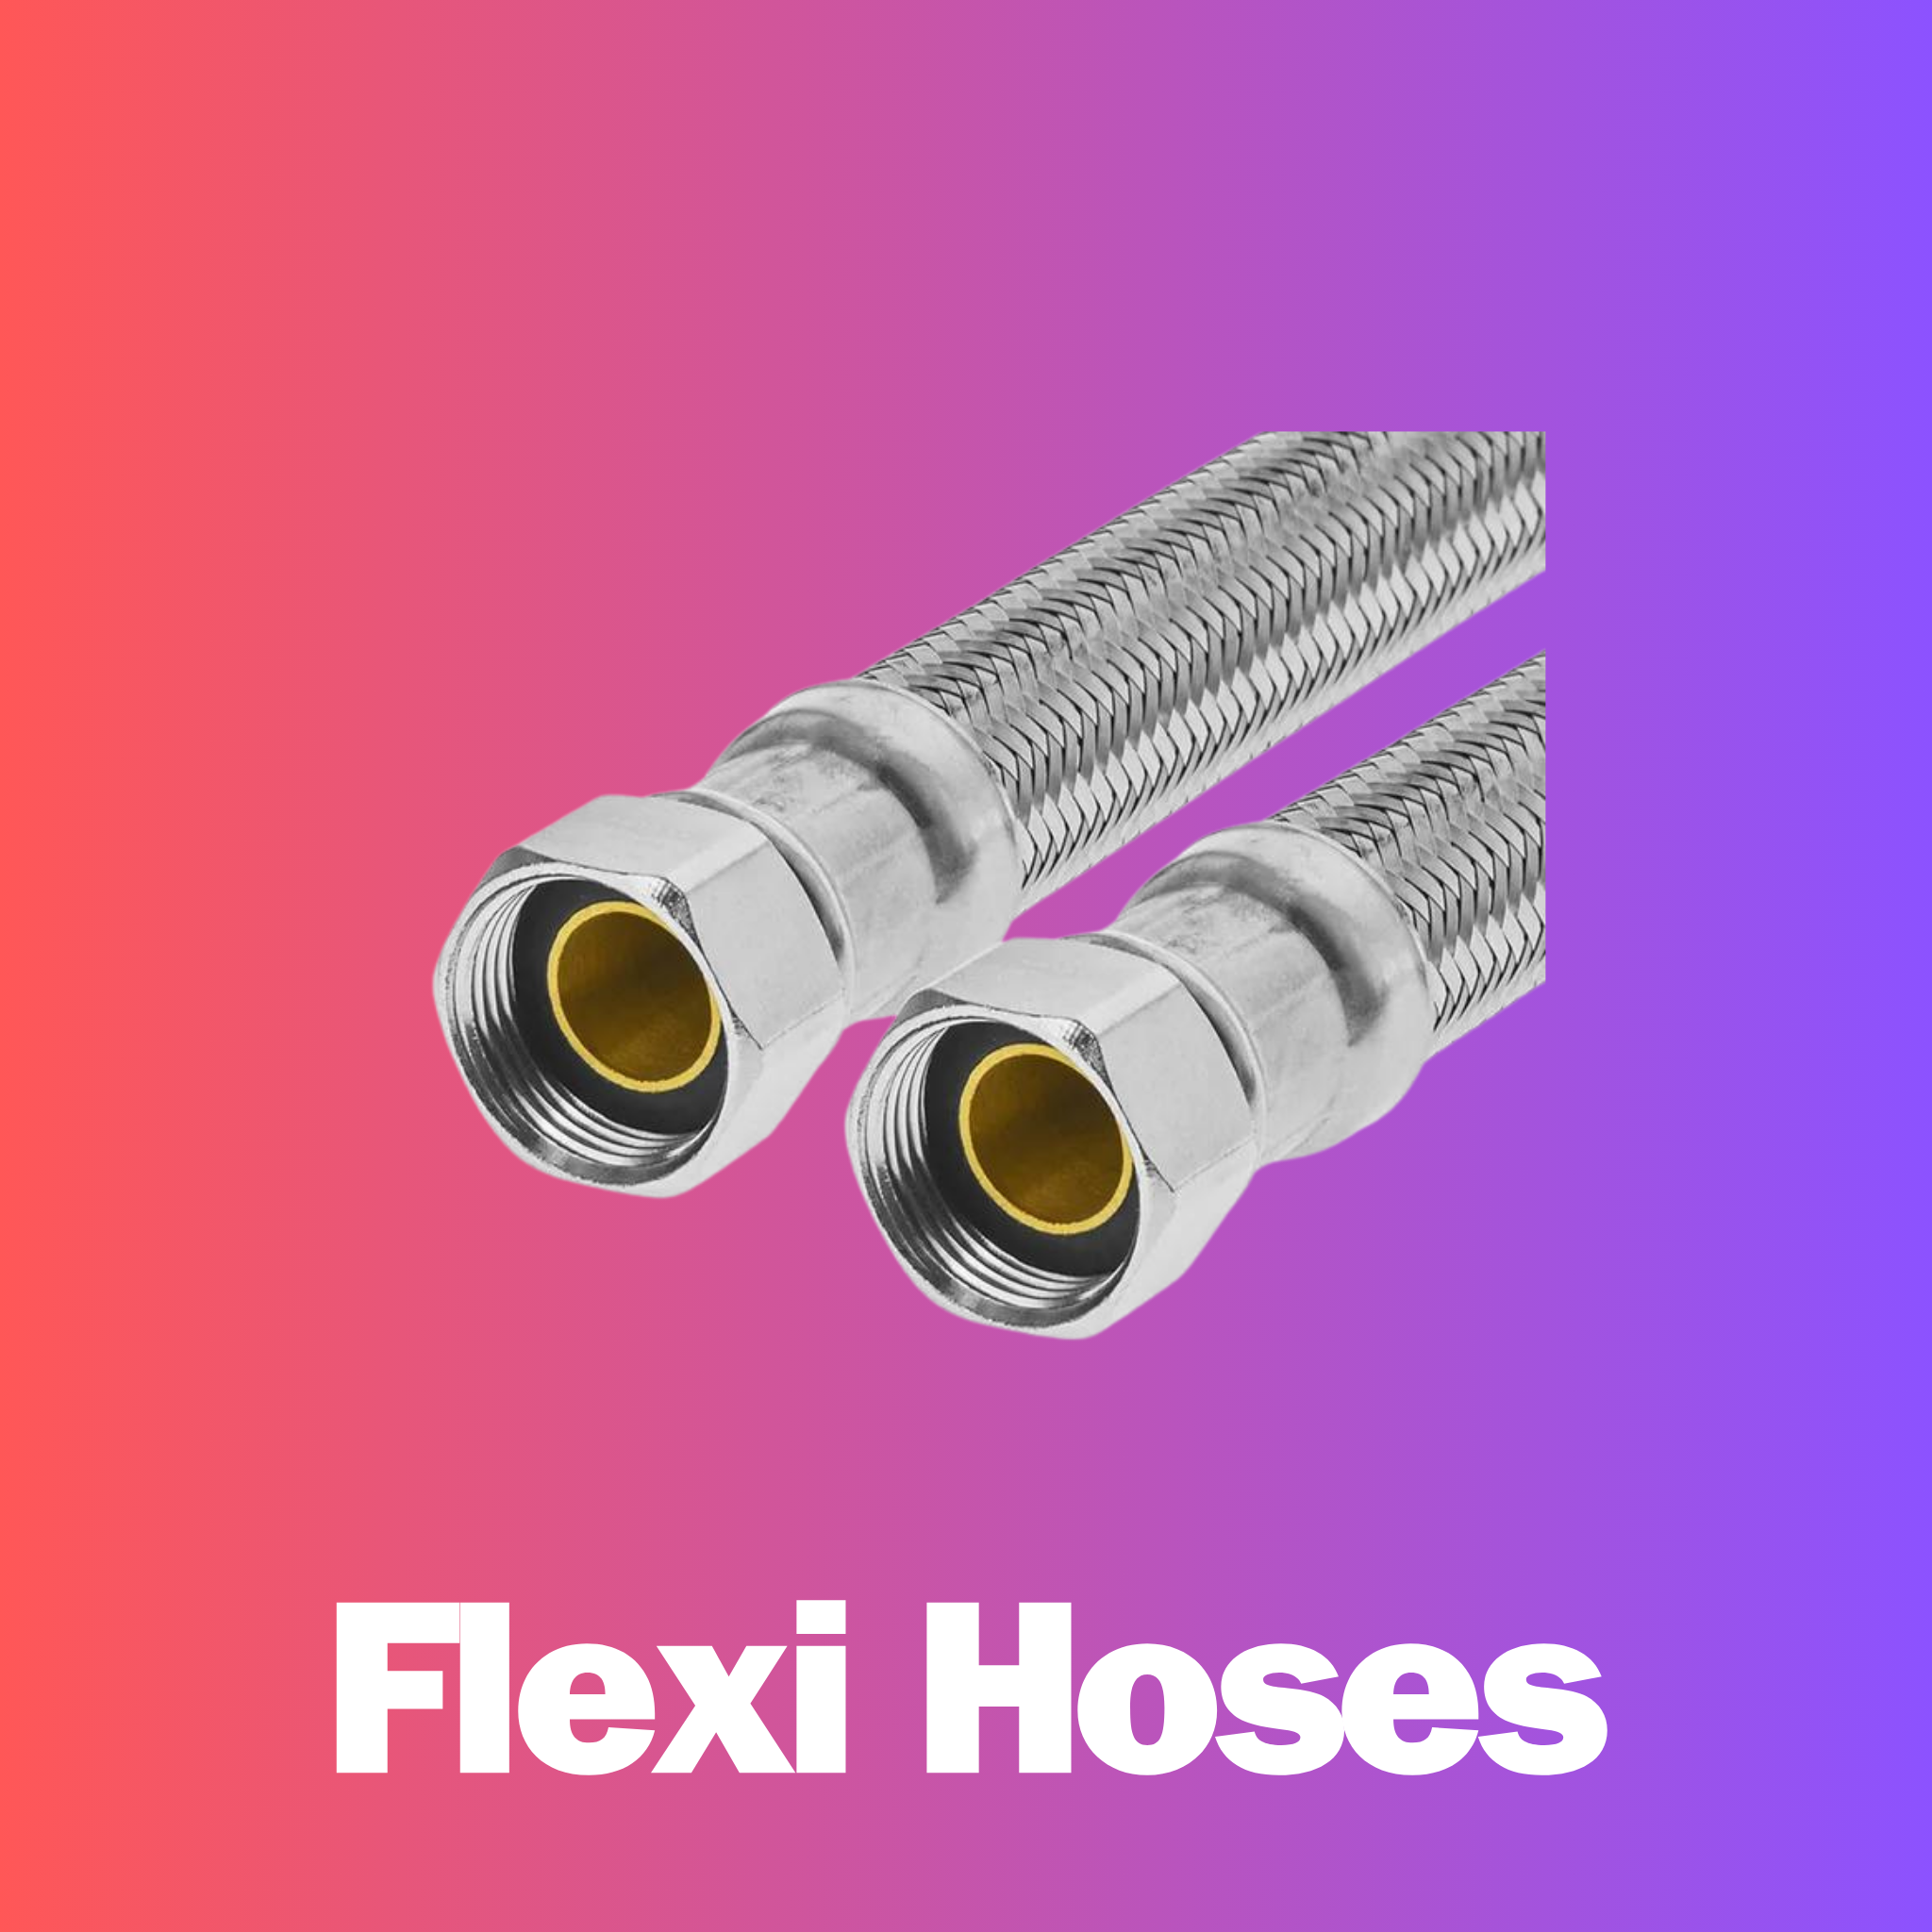 Flexible Hoses